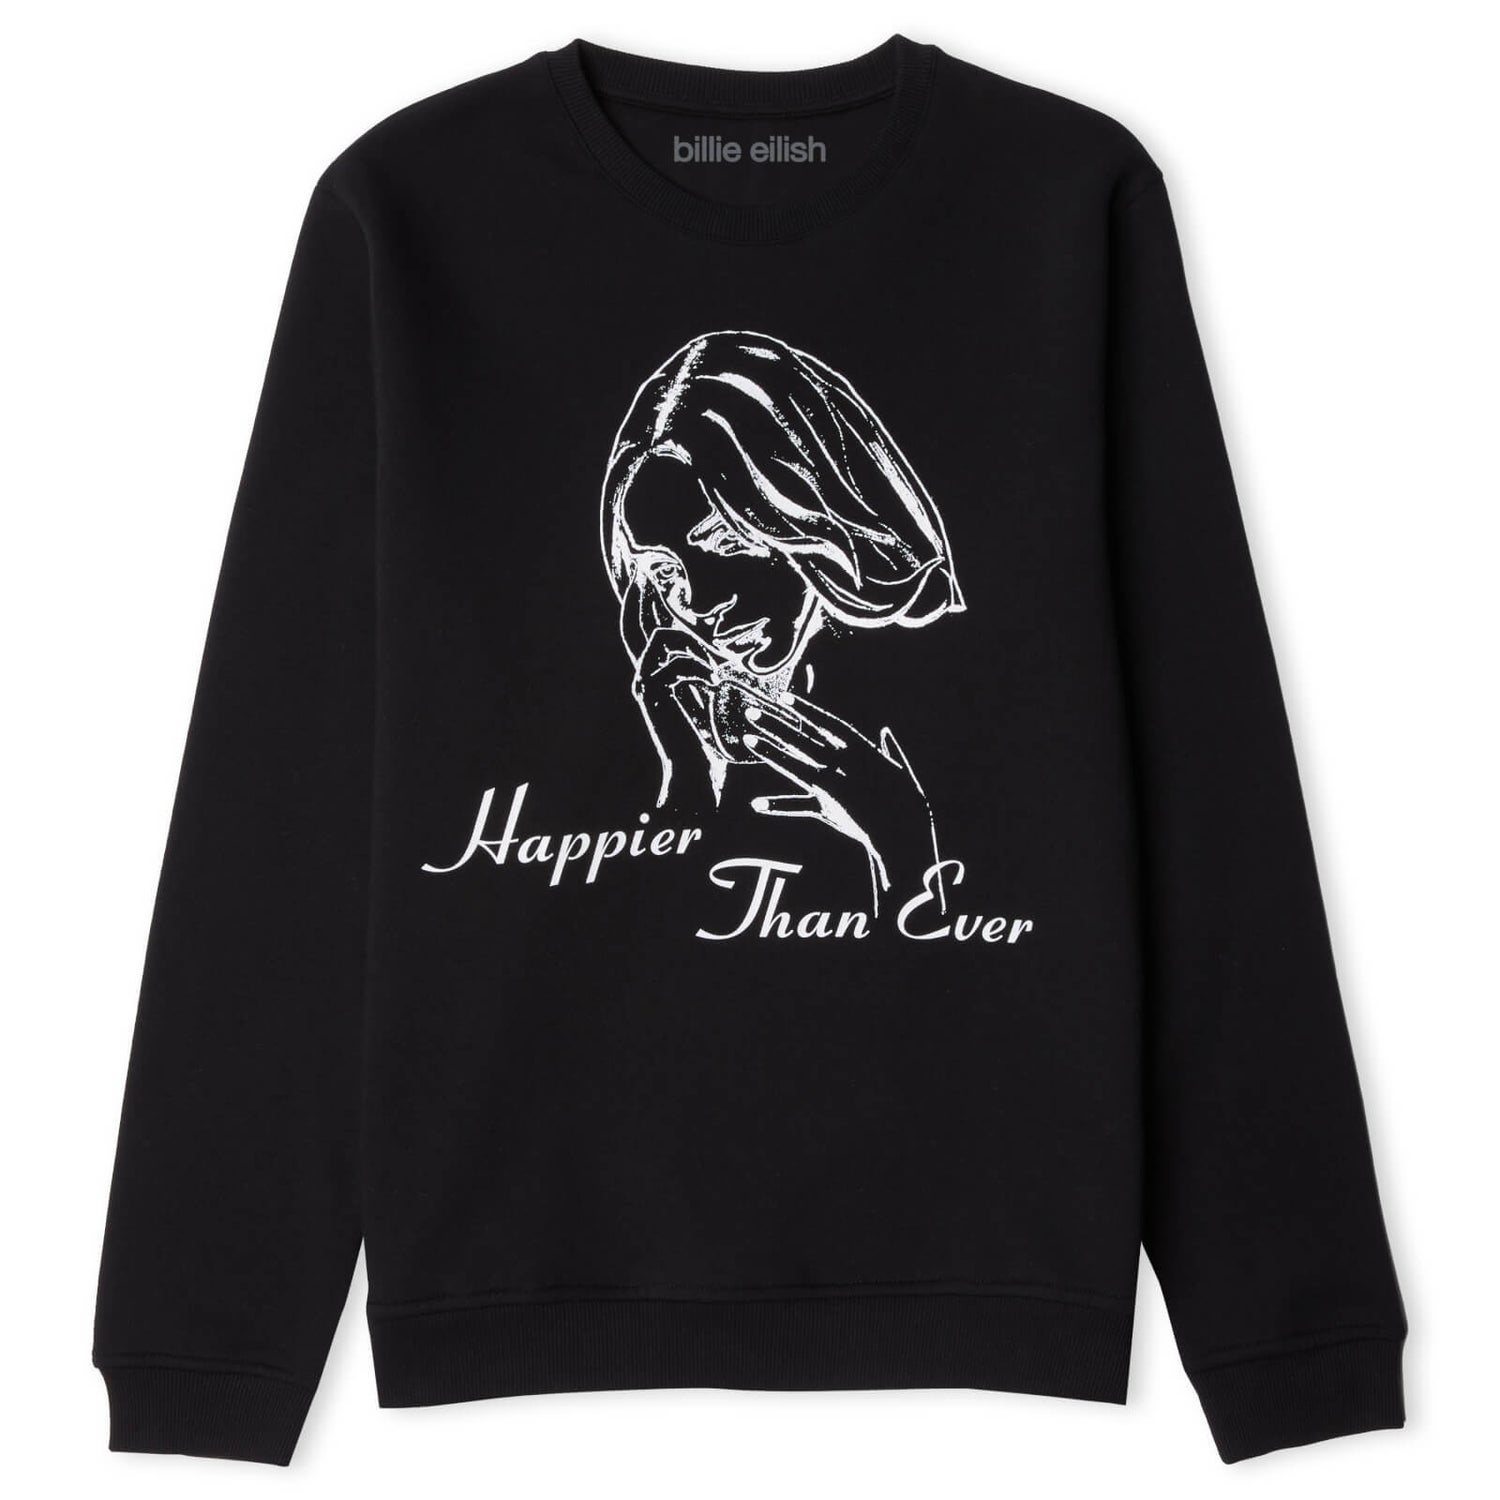 Billie Eilish Happier Than Ever Sweatshirt - Black - XXL - Zwart